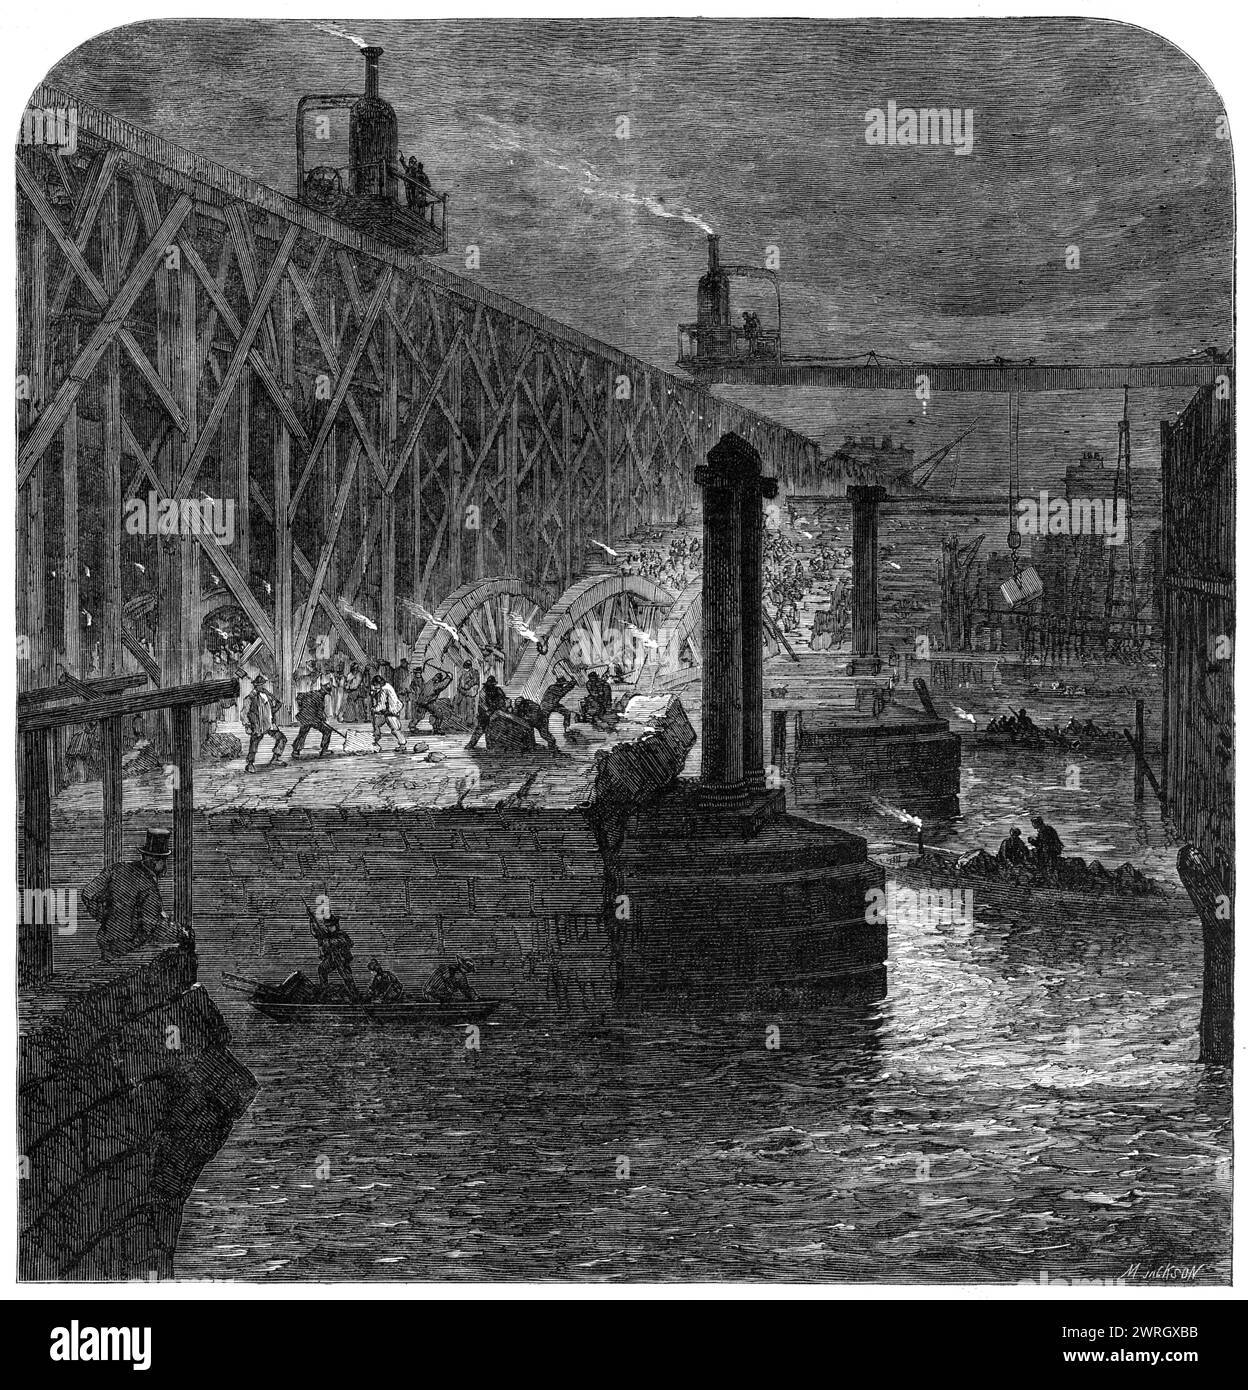 Abriss der Blackfriars Bridge, [London], 1864. Blick vom Surrey-Ufer der Themse aus, zeigt... das Gerüst, das die Entfernung von Materialien erleichtert...[auch sichtbar sind] die provisorische Holzbrücke...[und] die eiserne Brücke der London, Chatham und Dover Railway... die alte Brücke, von der die Überreste so schnell verschwinden, wurde vor etwa hundert Jahren gebaut, wurde 1760 begonnen und 1769 fertiggestellt... in dieser Jahreszeit, wenn die Tage so kurz sind, müssen die Männer abends im Licht von Naphtha-Lampen arbeiten... Ein neuartiges Merkmal im mechanischen A Stockfoto